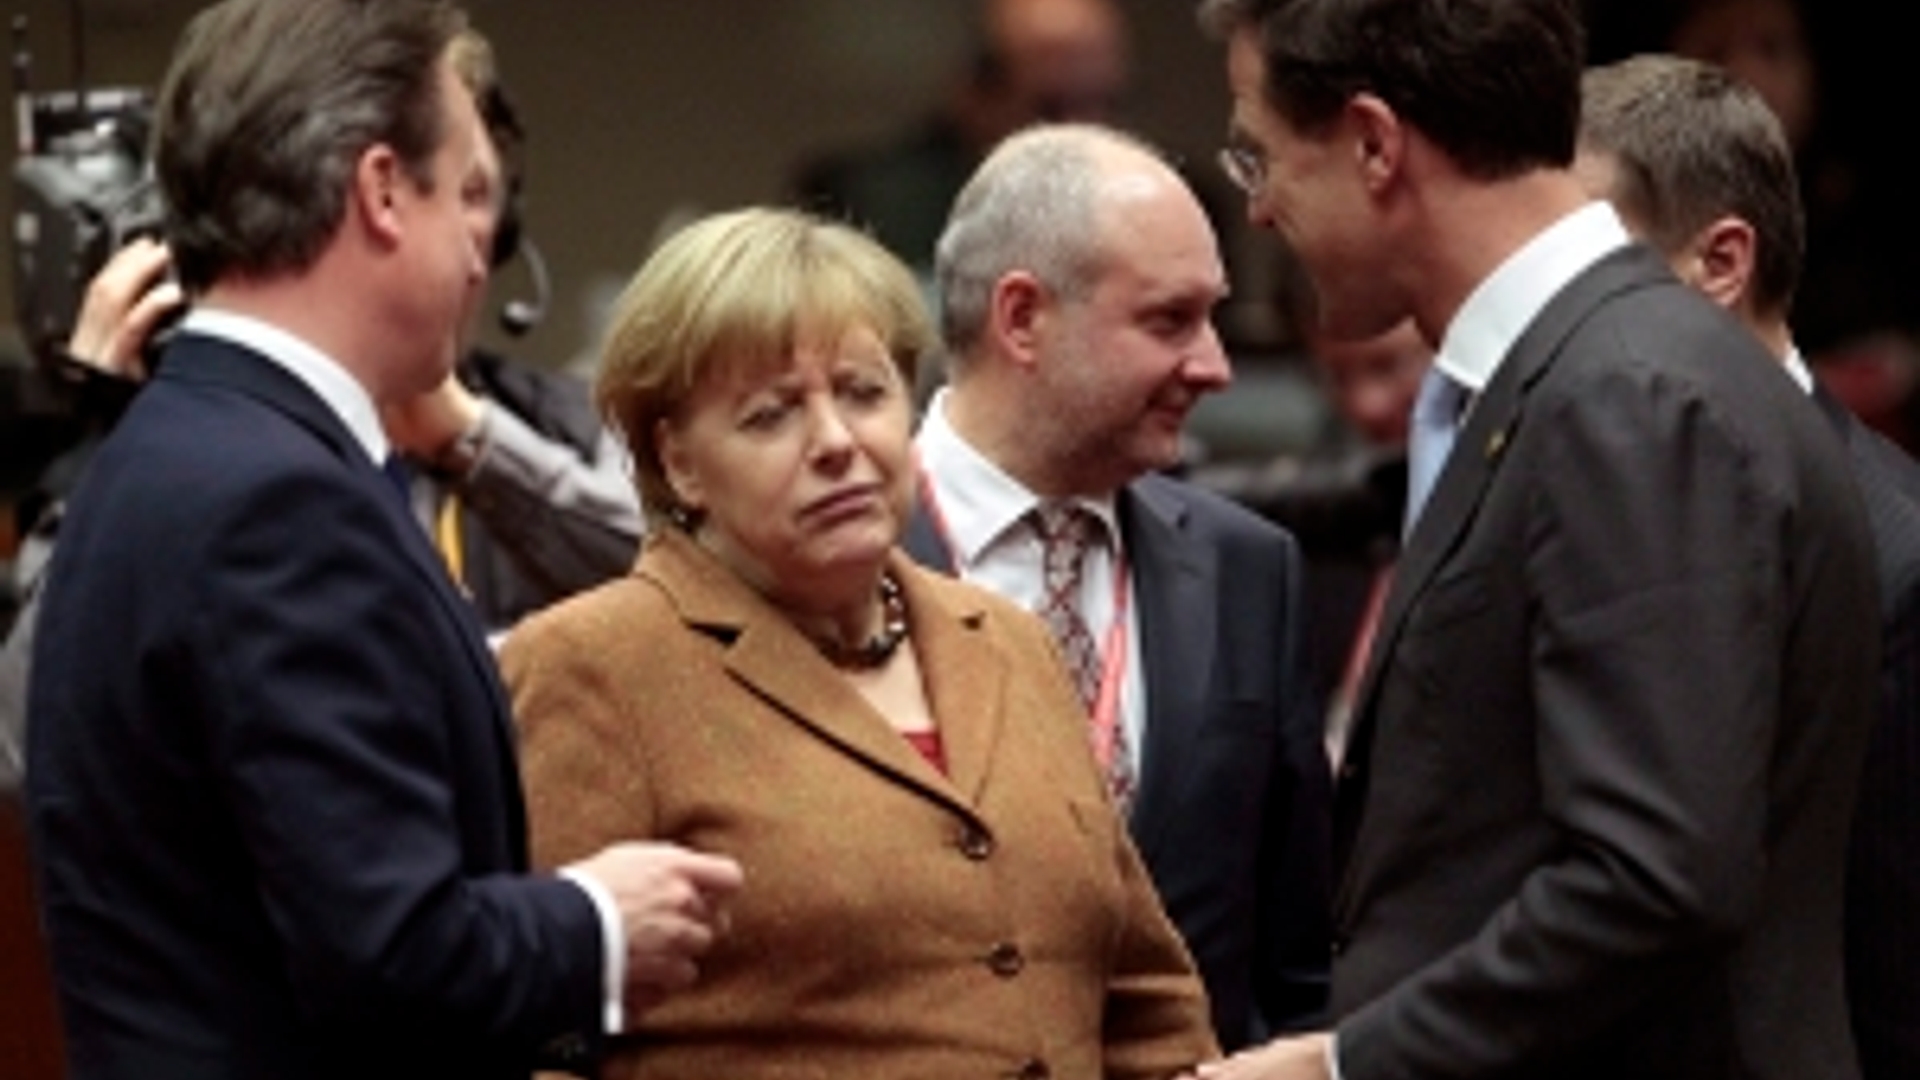 ANP-Rutte_Merkel_Cameron300.jpg